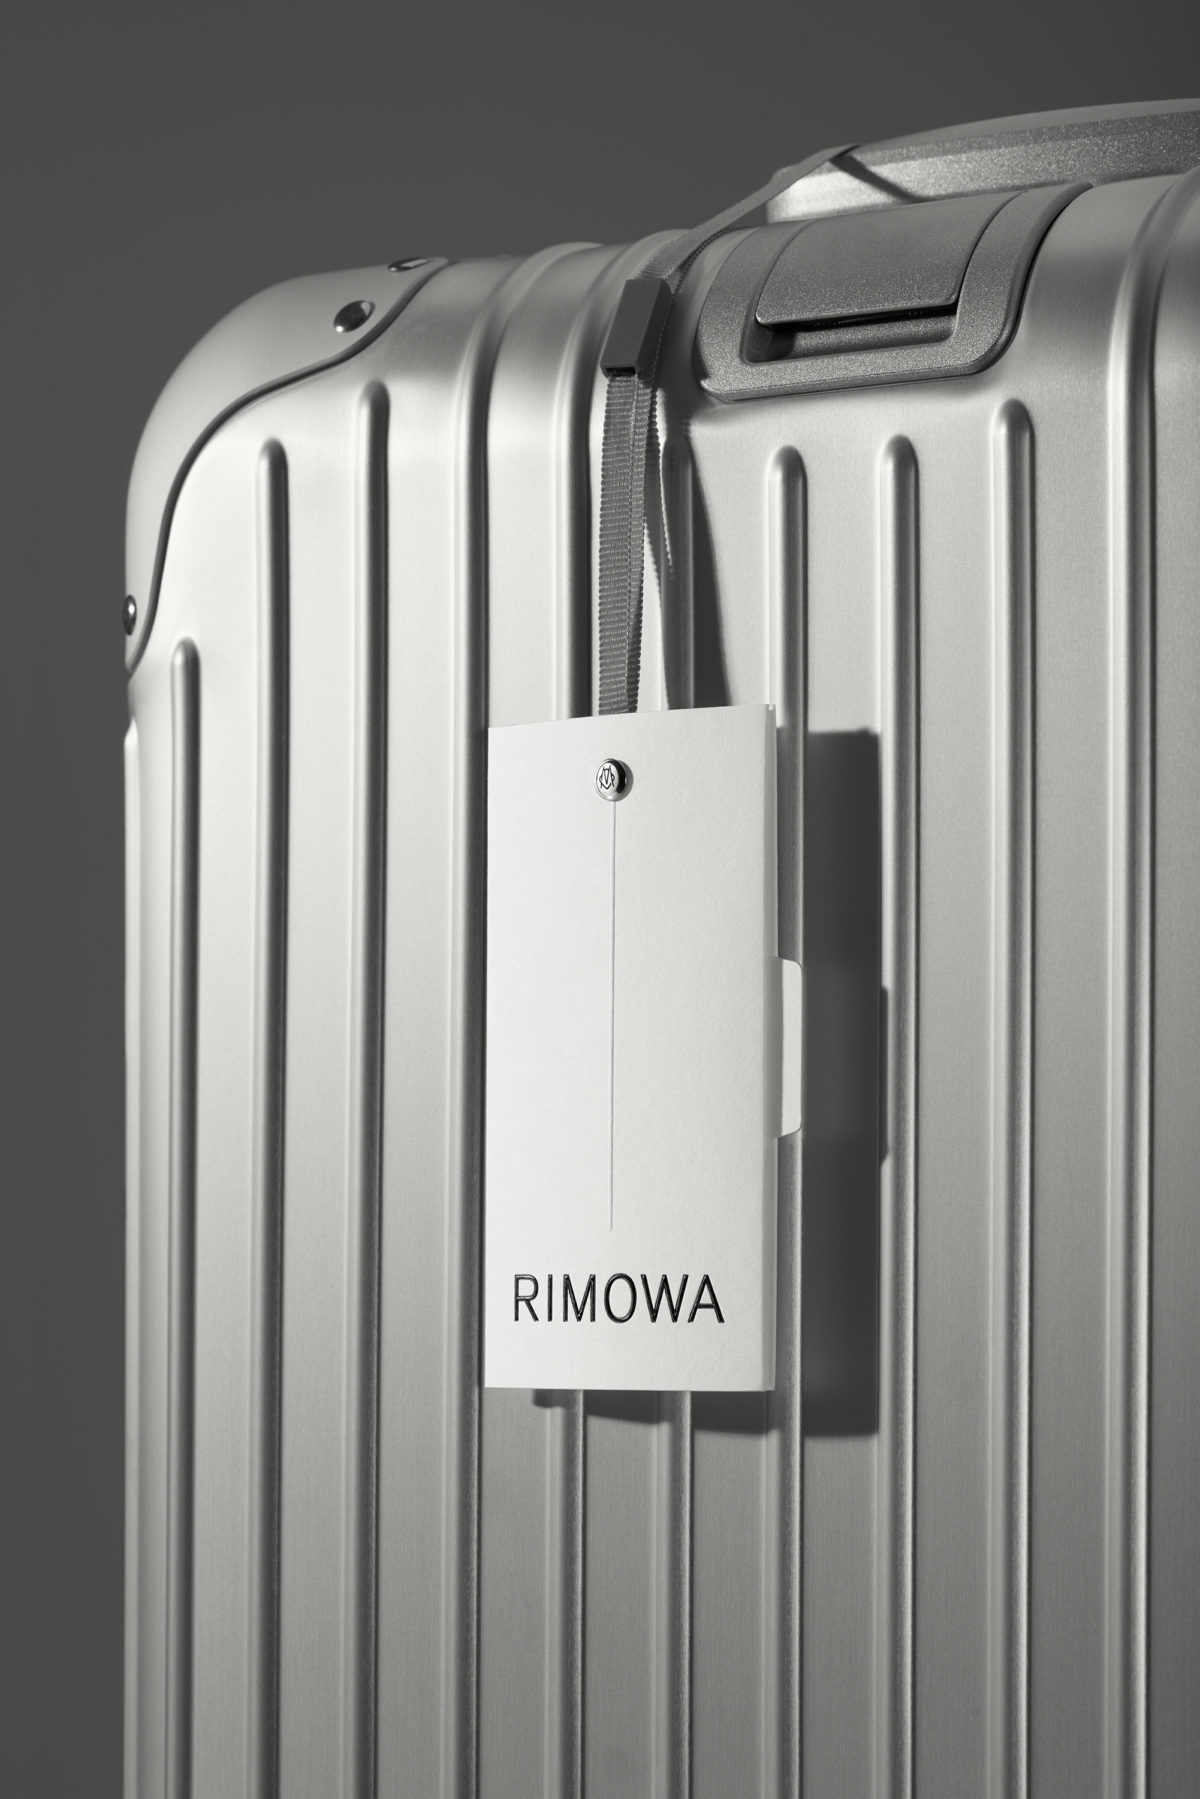 rimowa new logo